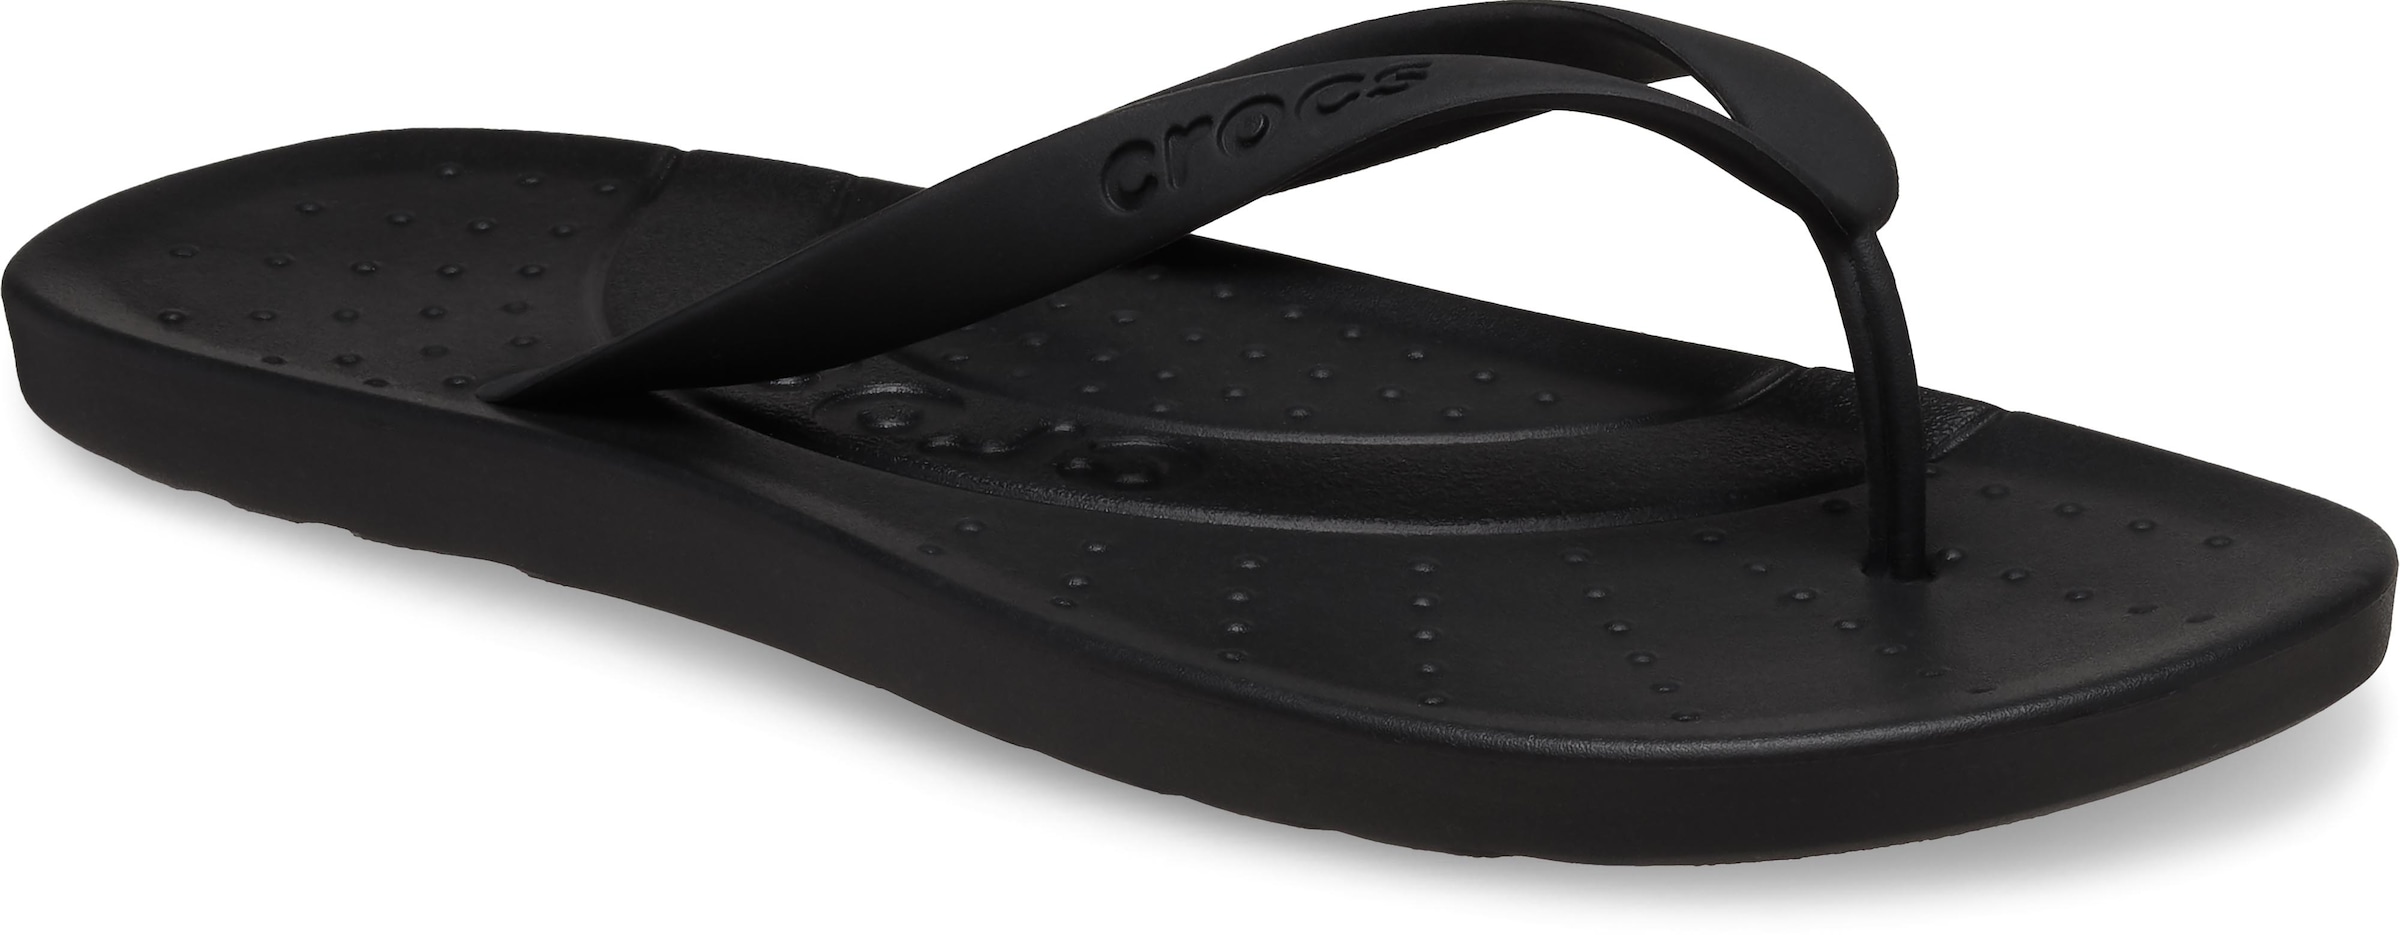 Crocs Zehentrenner »Crocs Flip«, Badeschuh, Sandale, Sommerschuh mit weichem Zehensteg